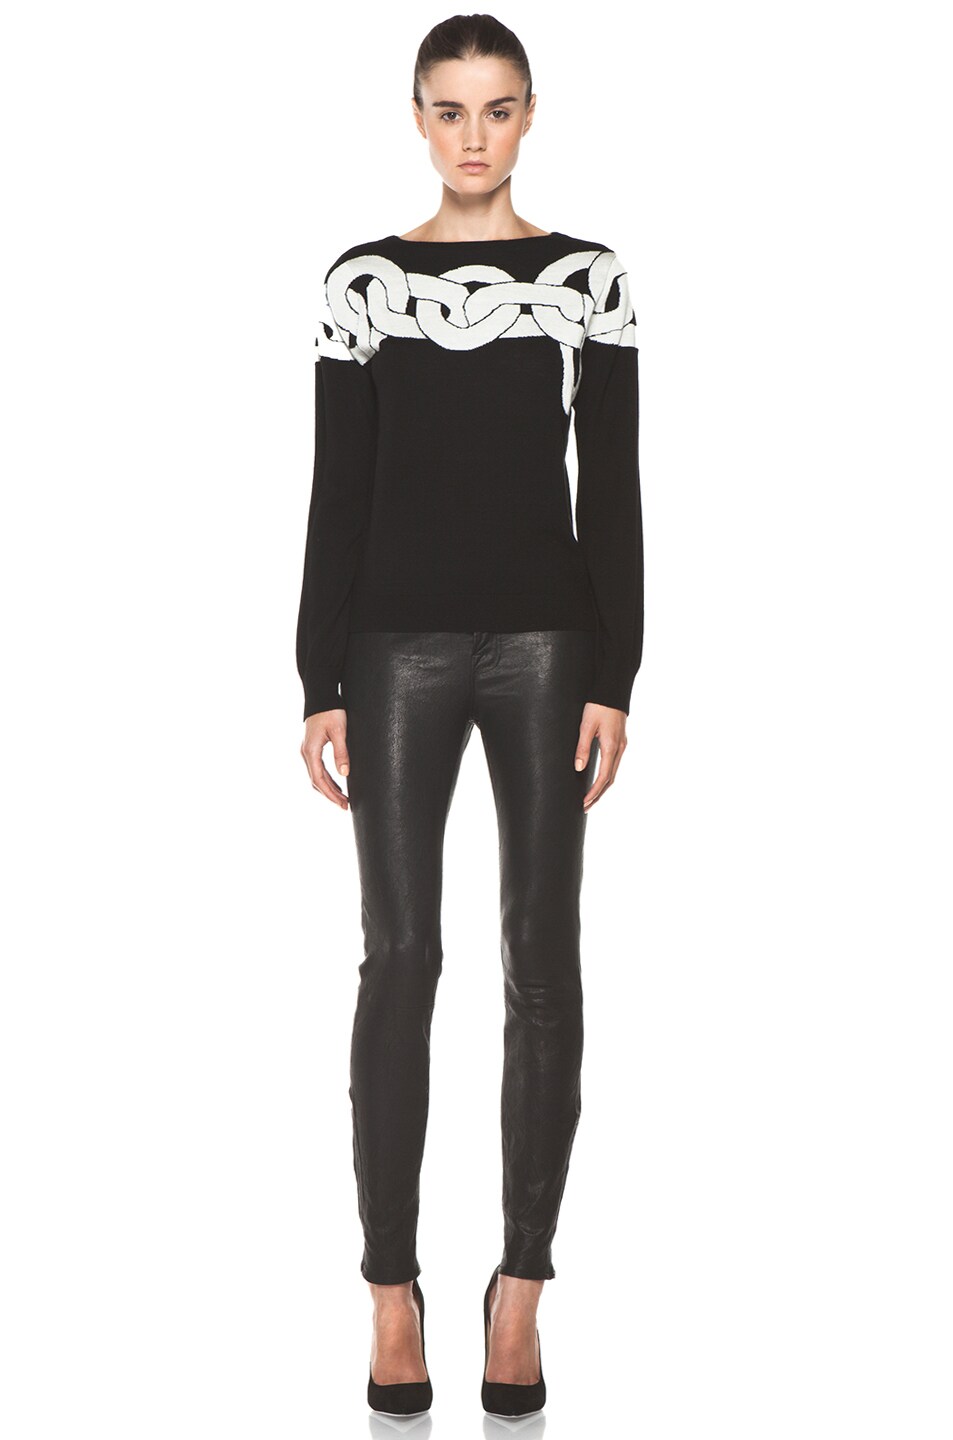 Diane von Furstenberg Tinkit Sweater in Simple Chains Black | FWRD